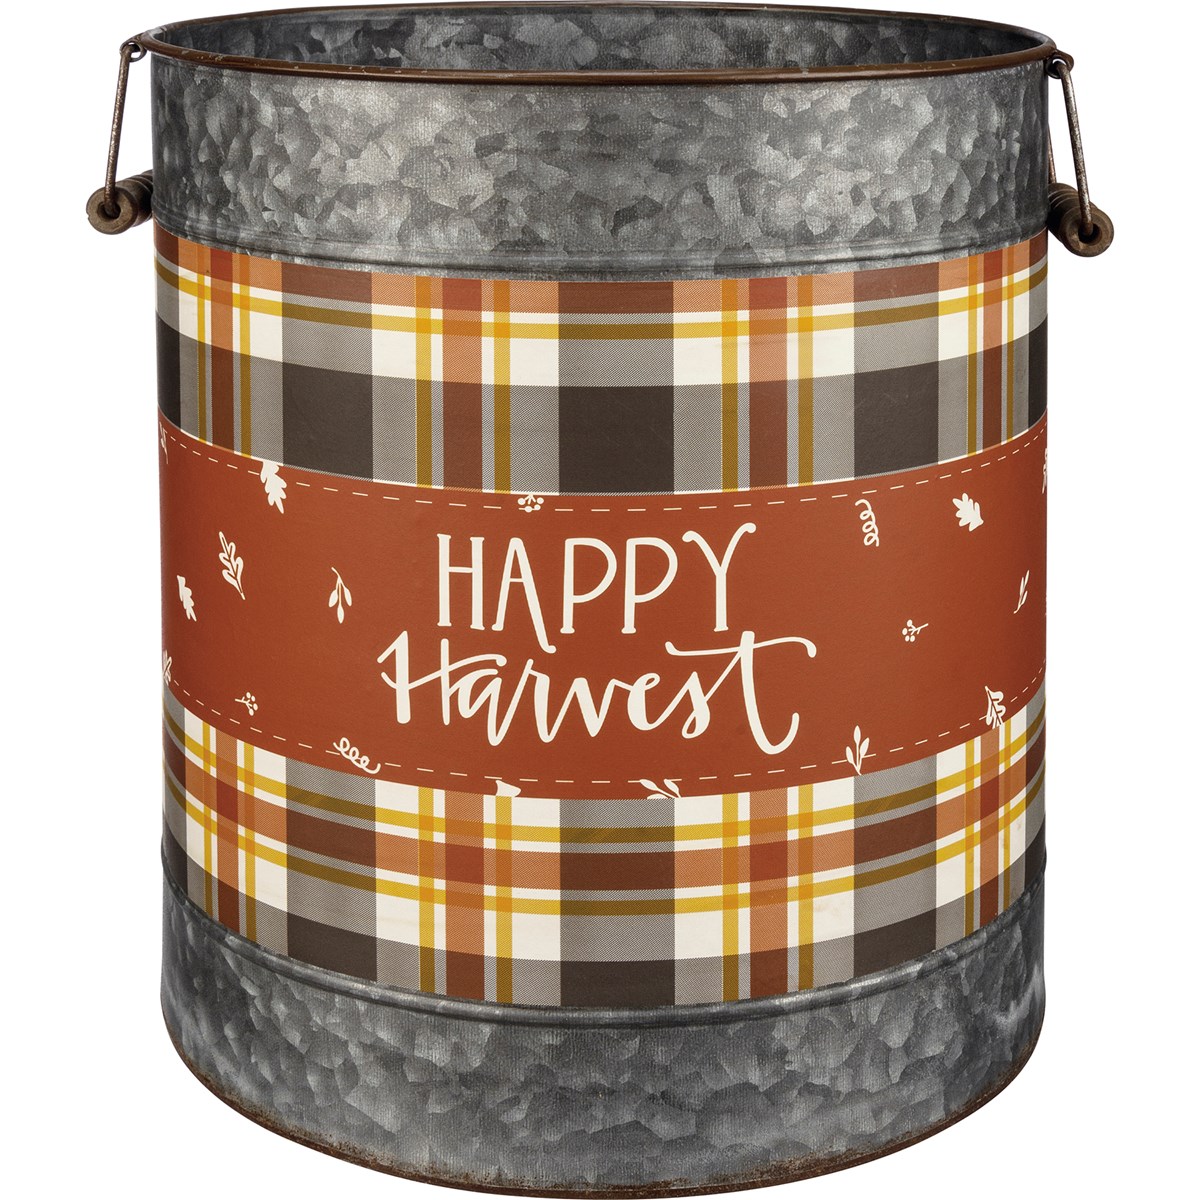 Happy Harvest Bucket Set - Metal, Paper, Wood